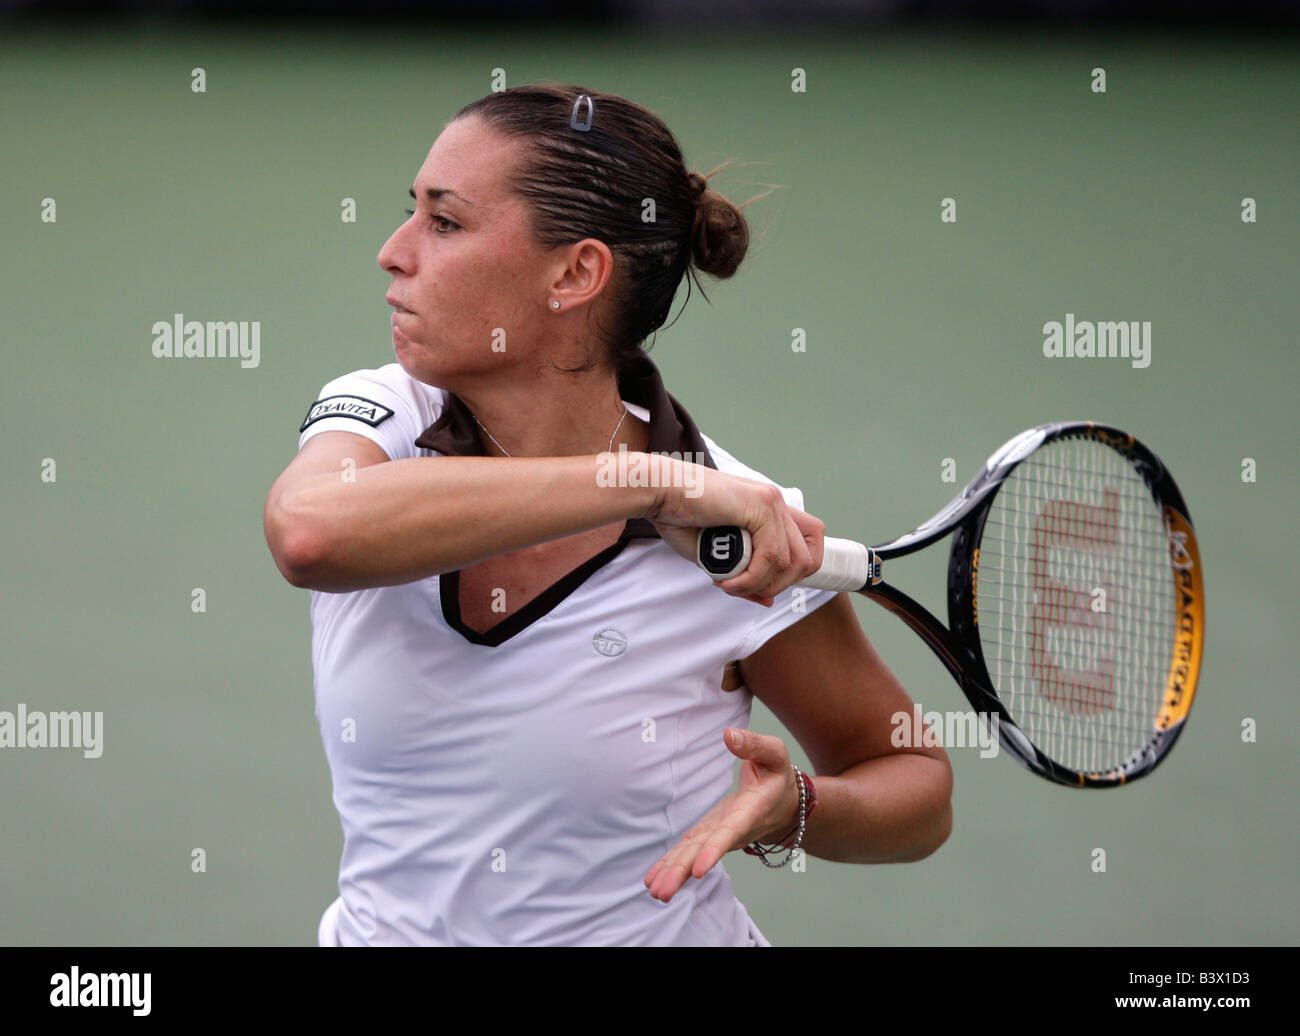 Tennis Pro Flavia Pennetta (ITA) en acción en el US Open. Foto de stock